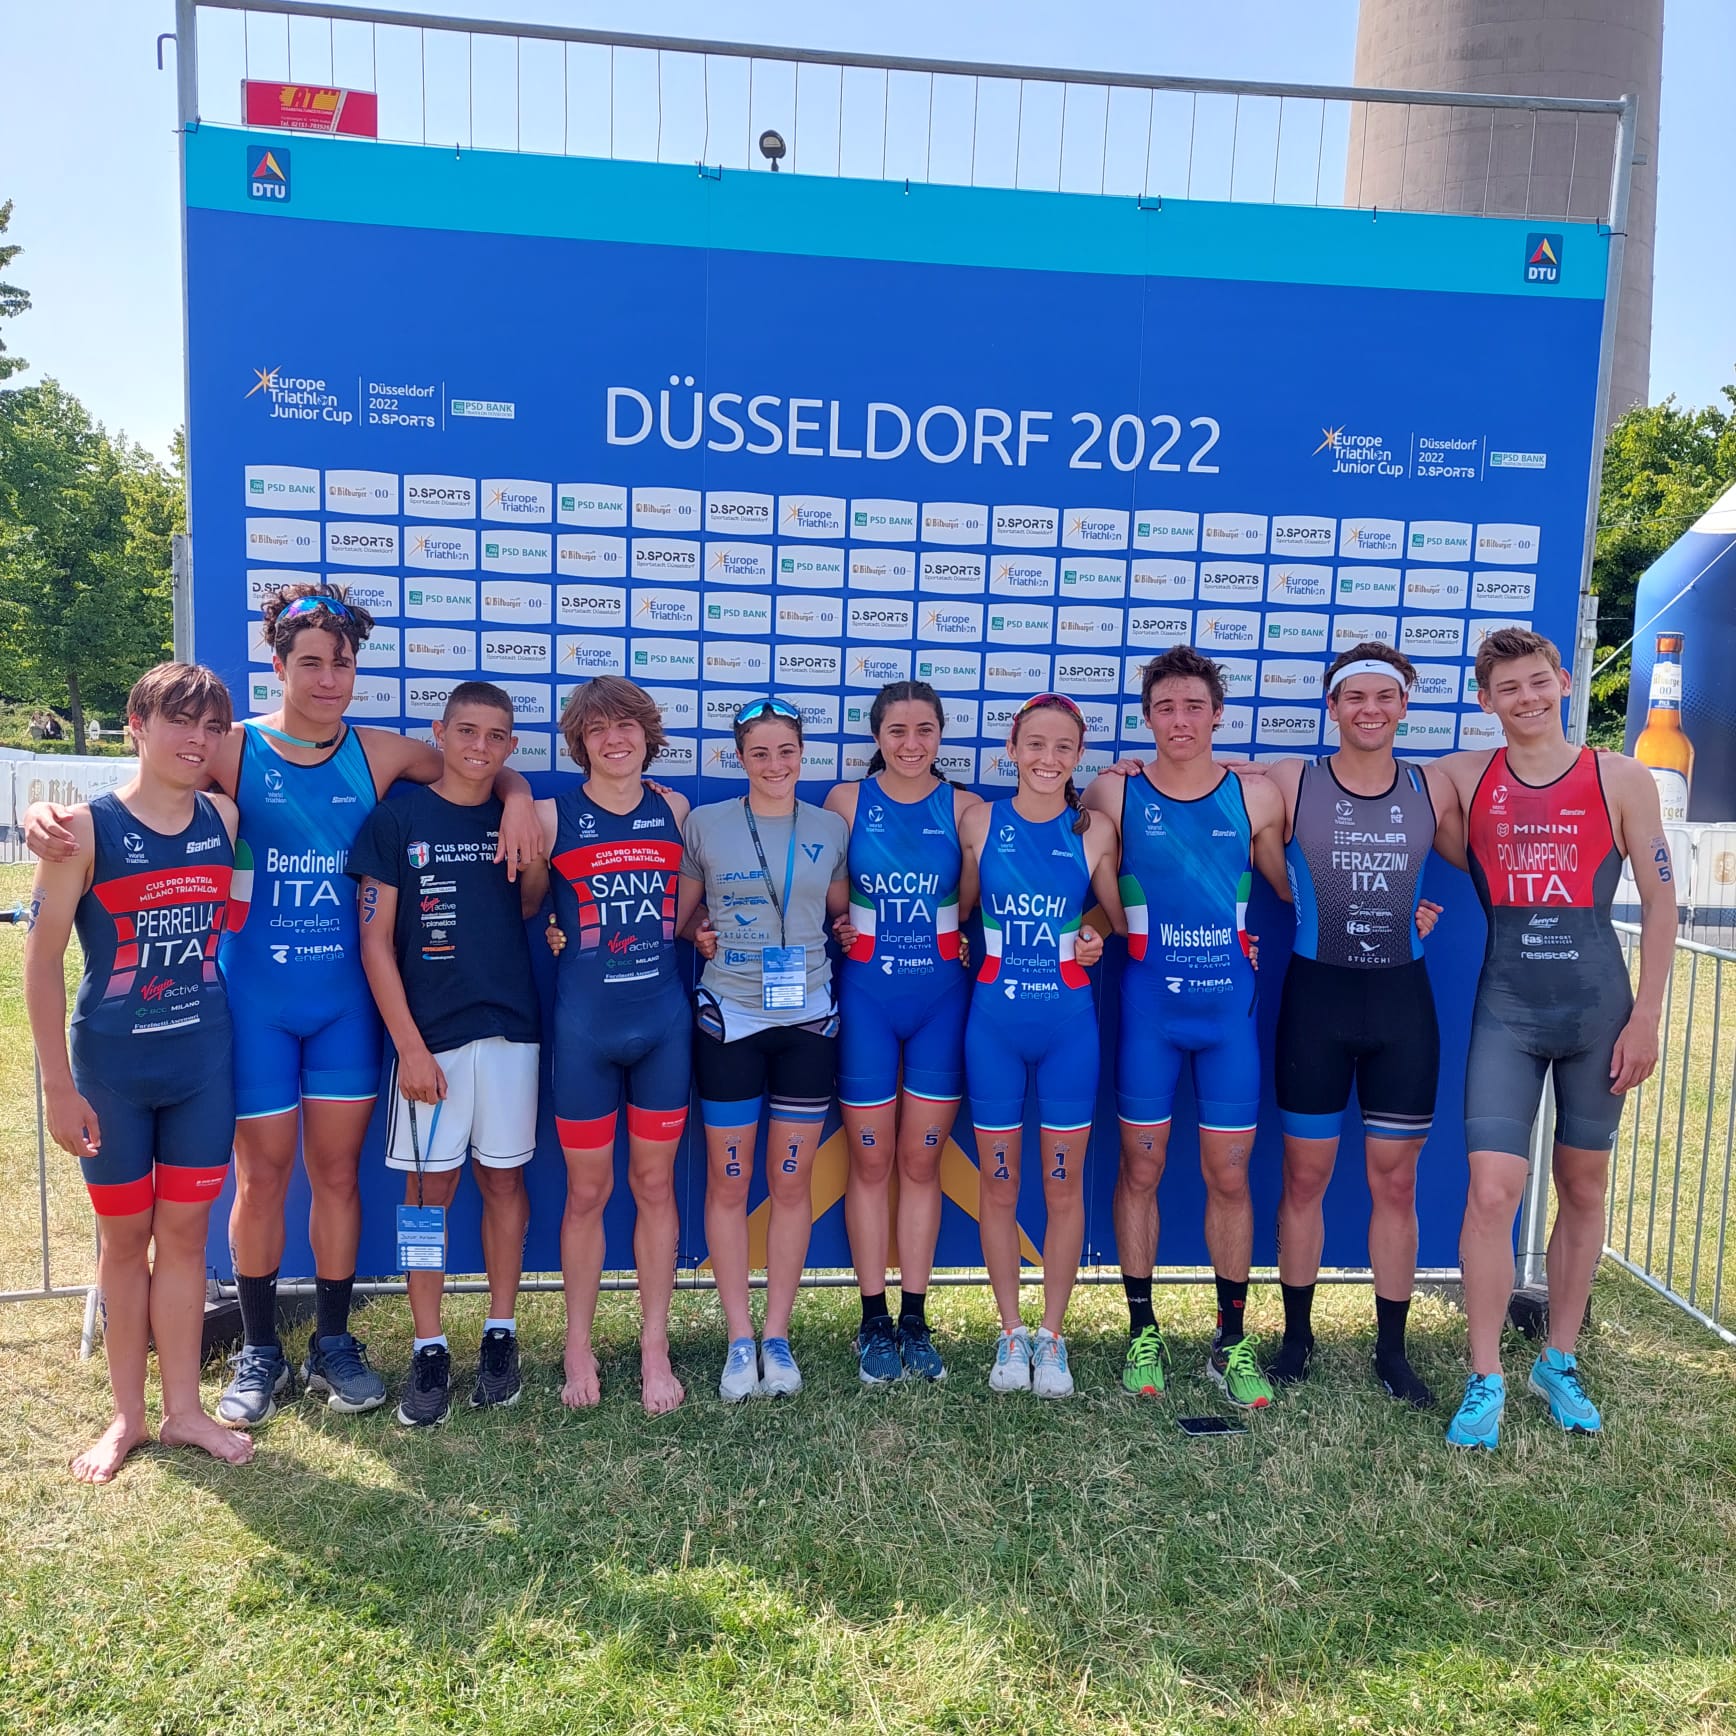 Gruppo Dusseldorf 2022